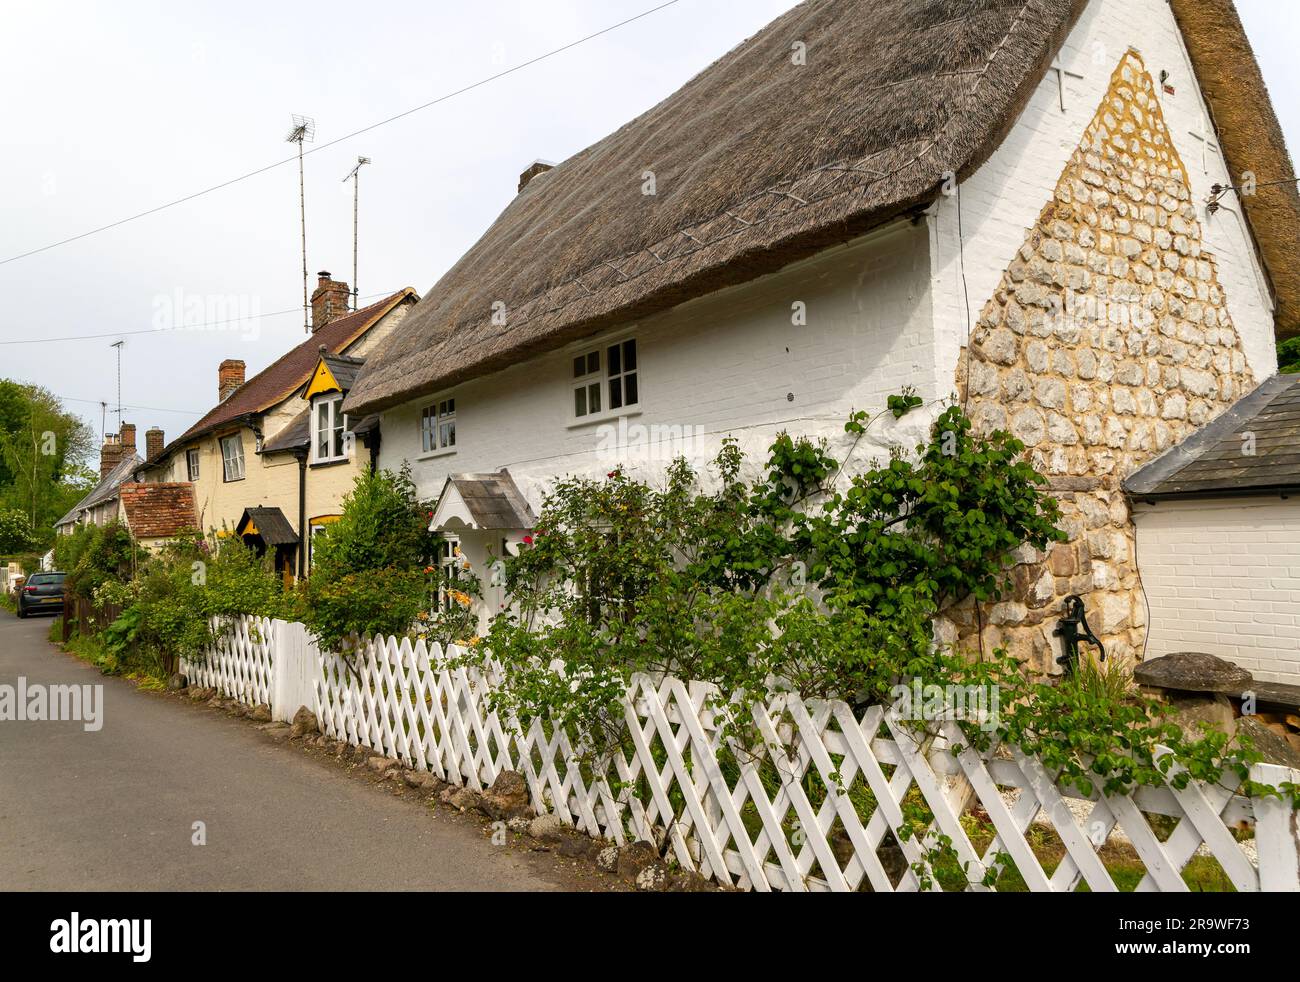 Beaux chalets historiques dans le village d'Avebury, Wiltshire, Angleterre, Royaume-Uni Banque D'Images